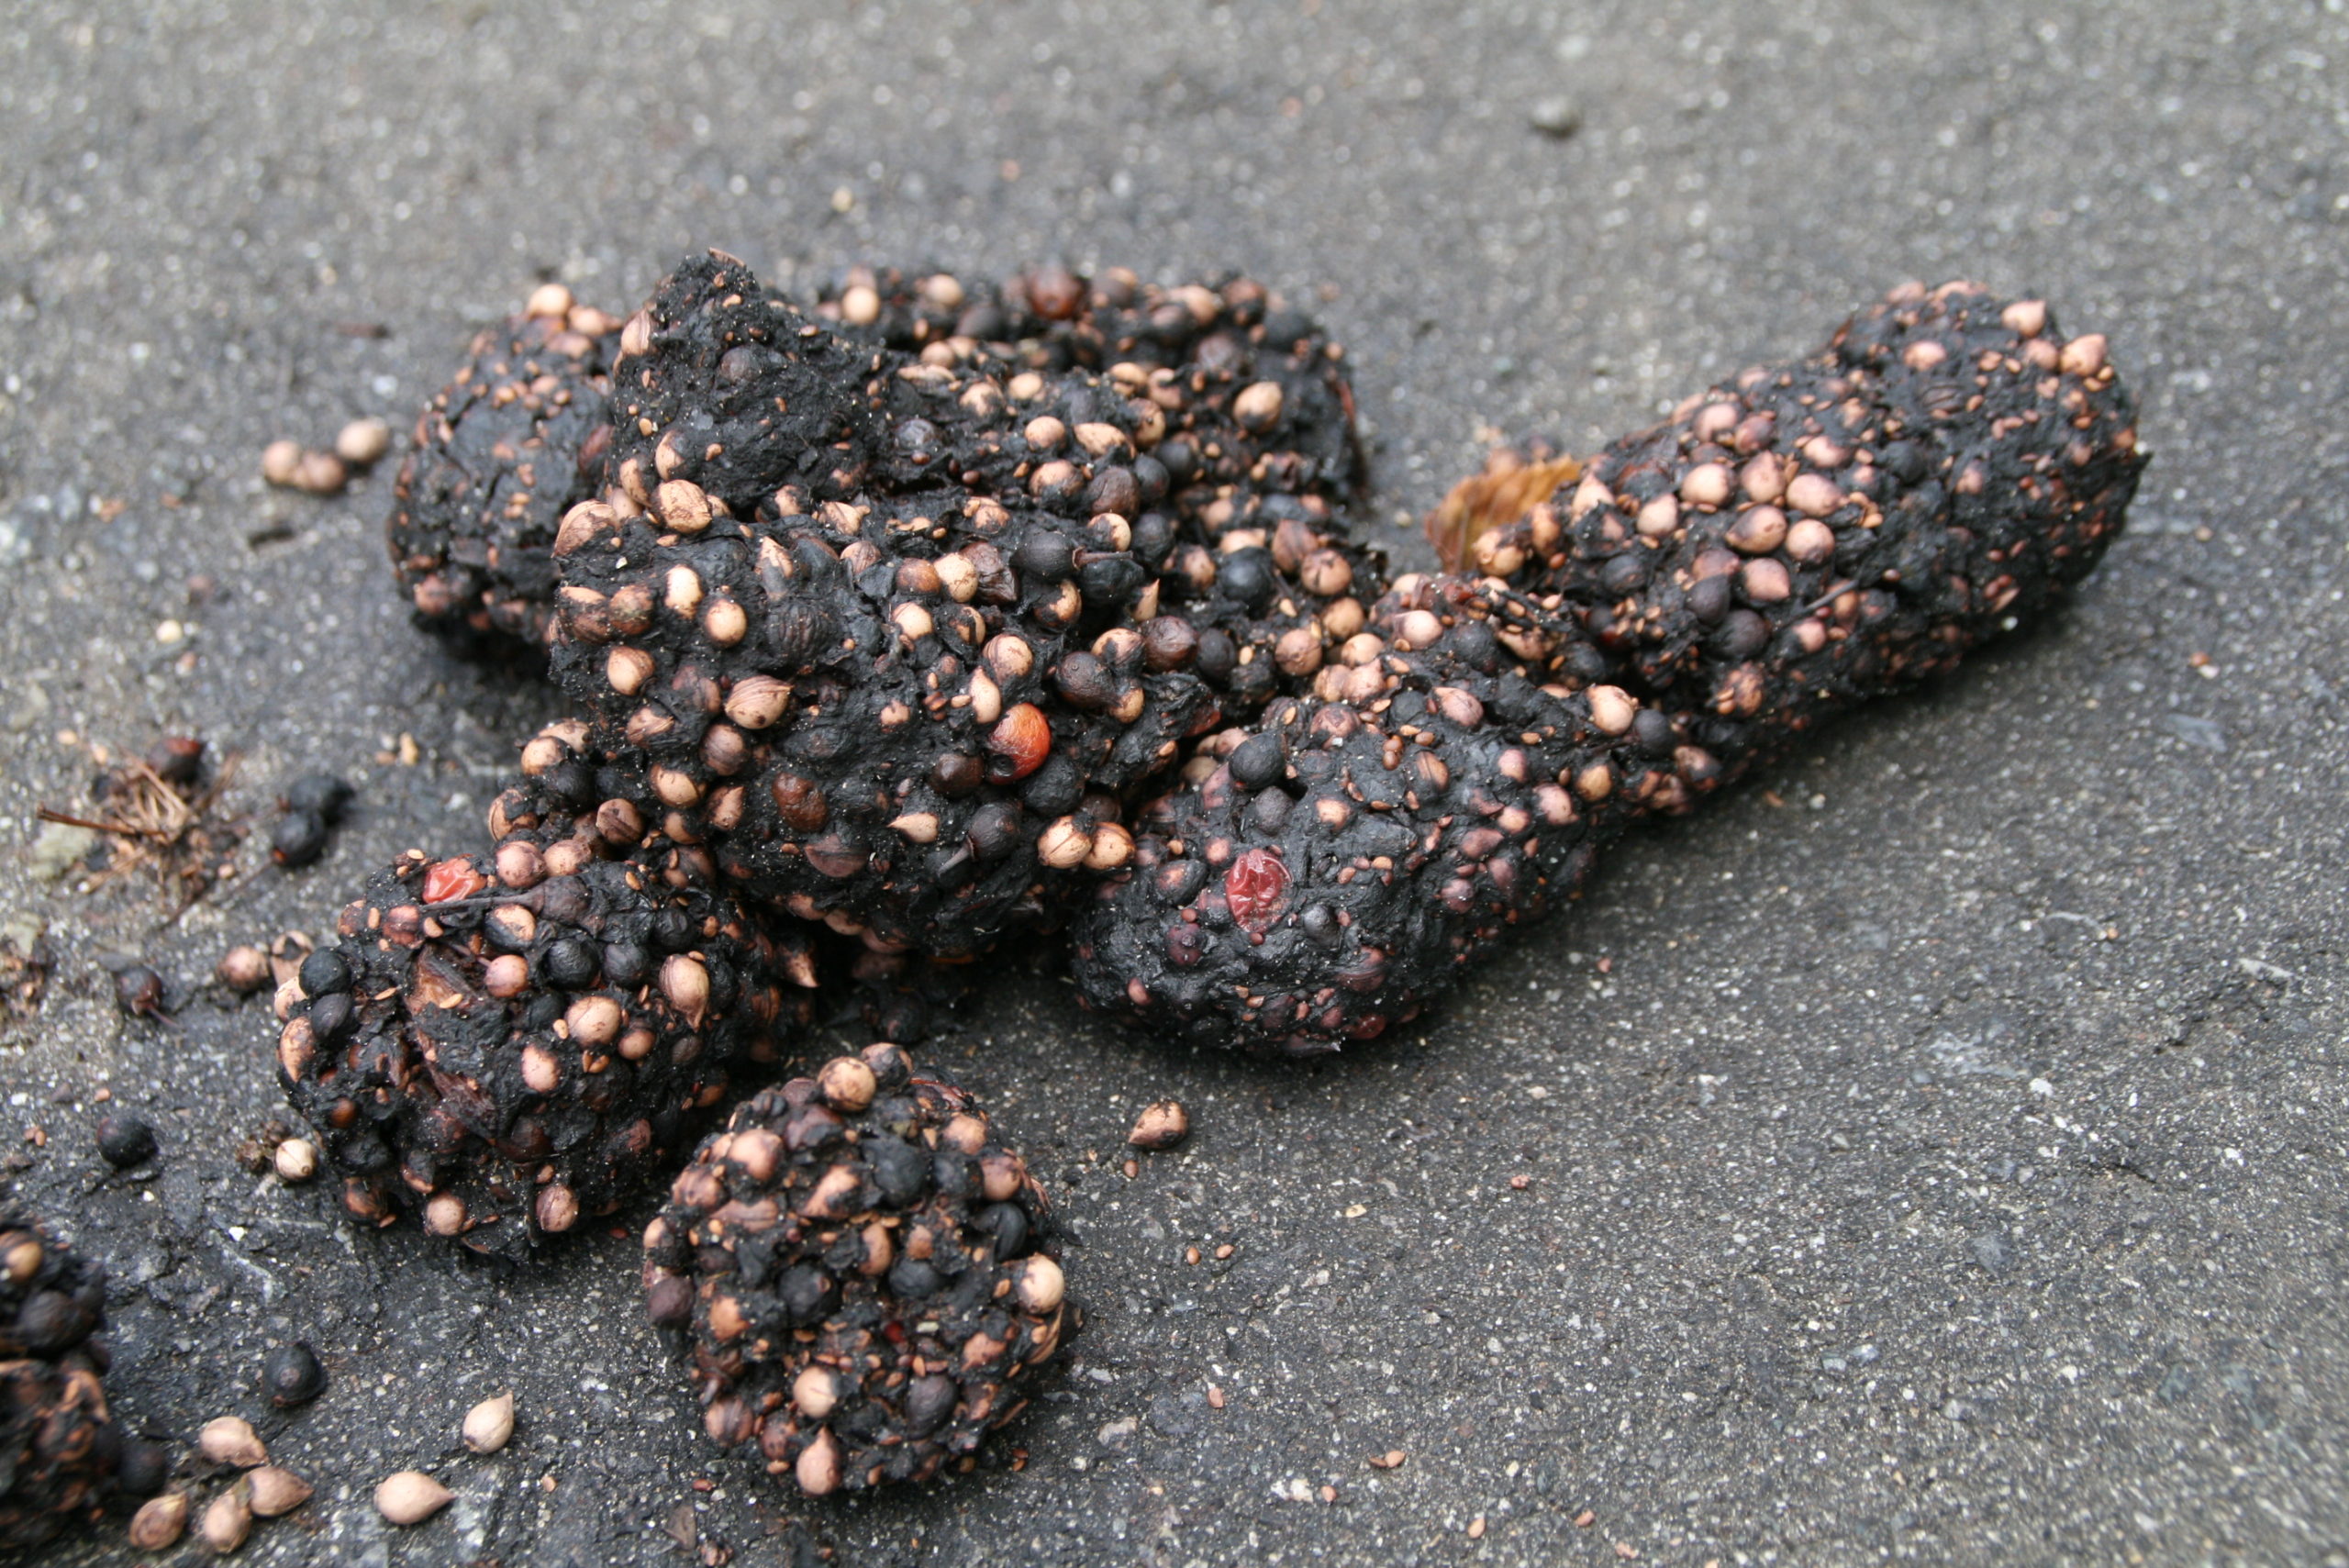 ウワミズザクラの種子などが含まれたツキノワグマの糞